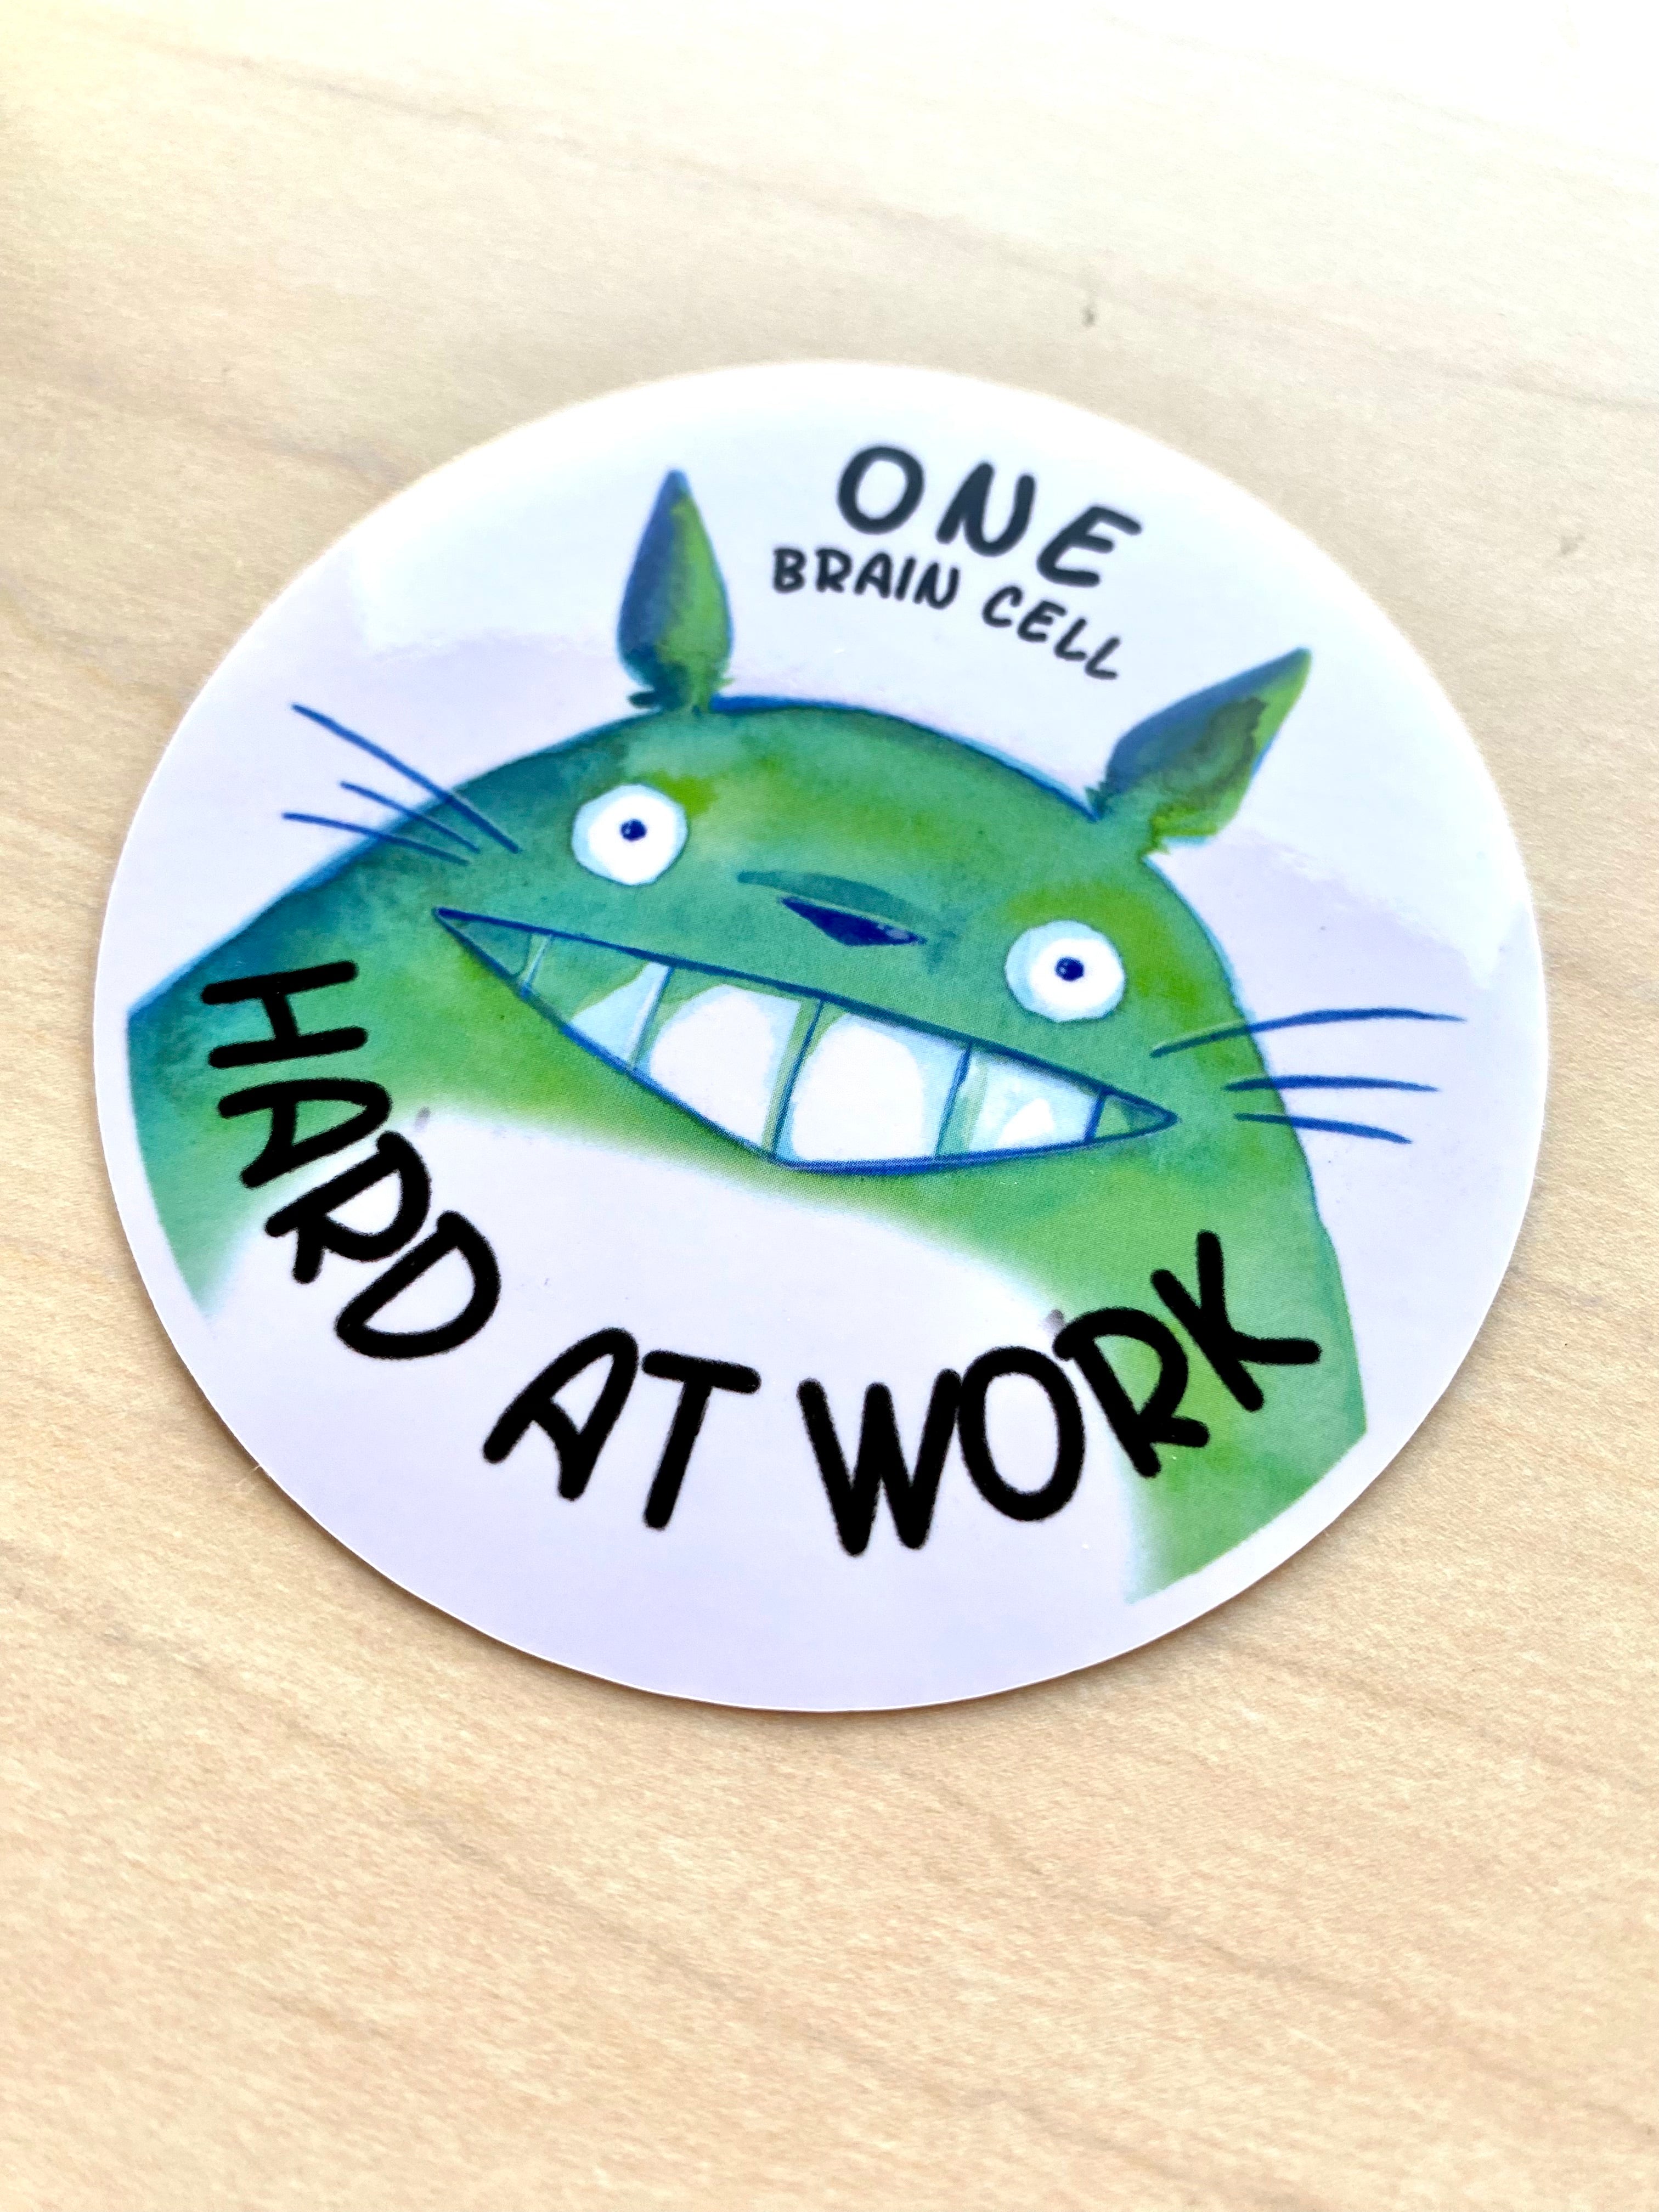 Sticker- Fan Art of Totoro | One Brain Cell Hard at Work | 3" Vinyl Sticker